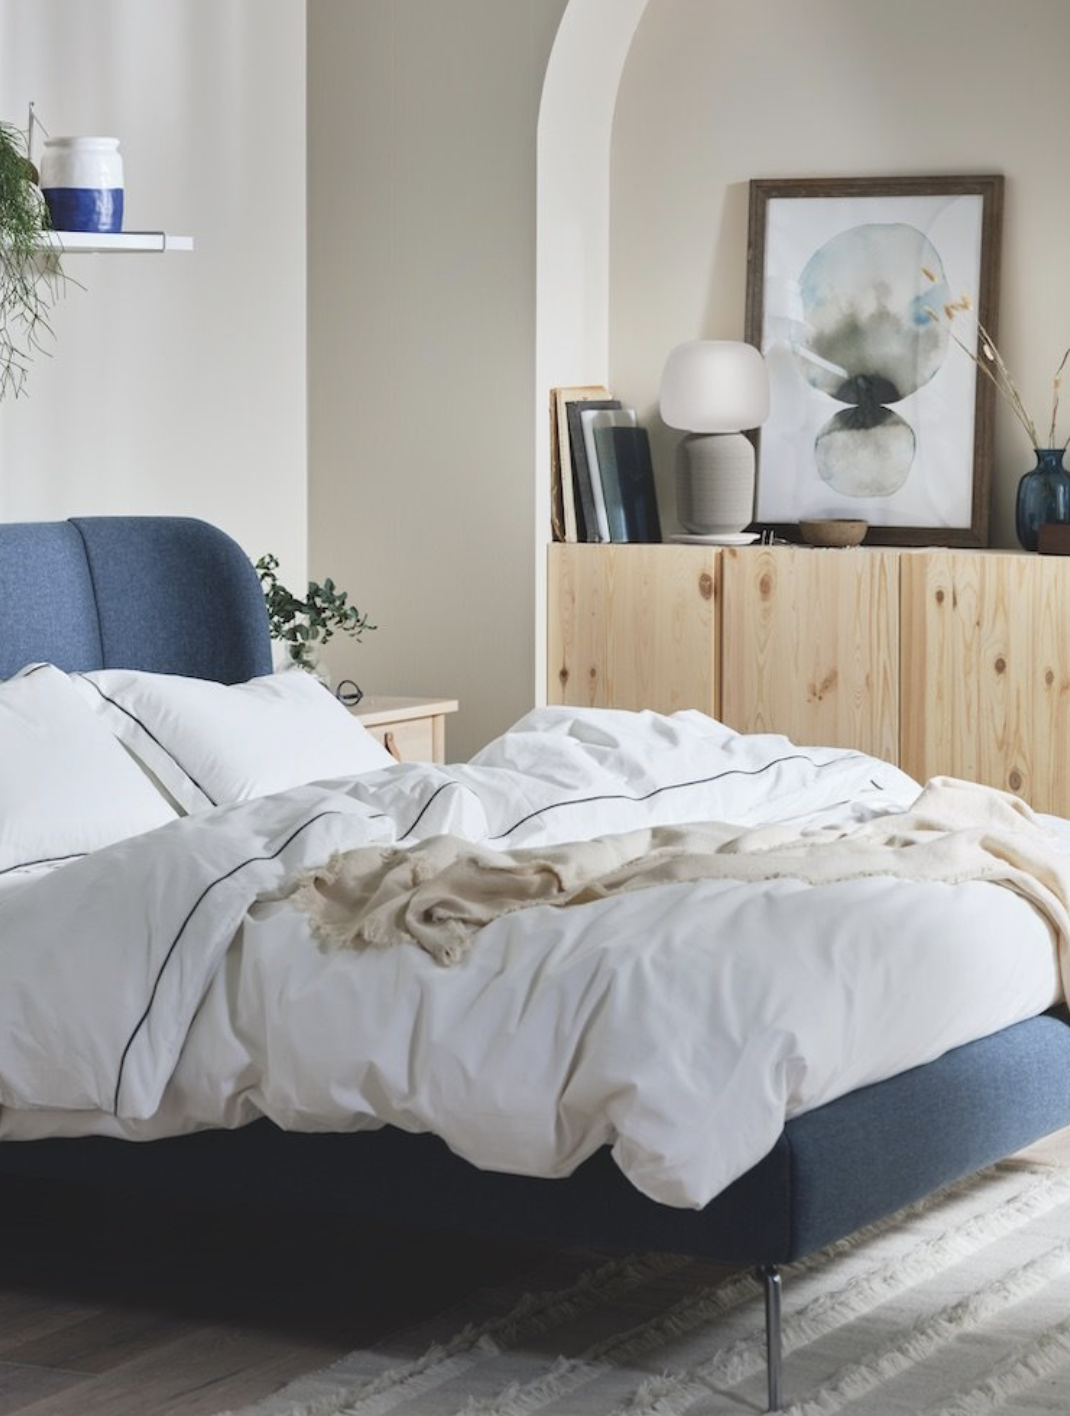 Dormitorio de invierno con cama tapizada y ropa de cama blanca.